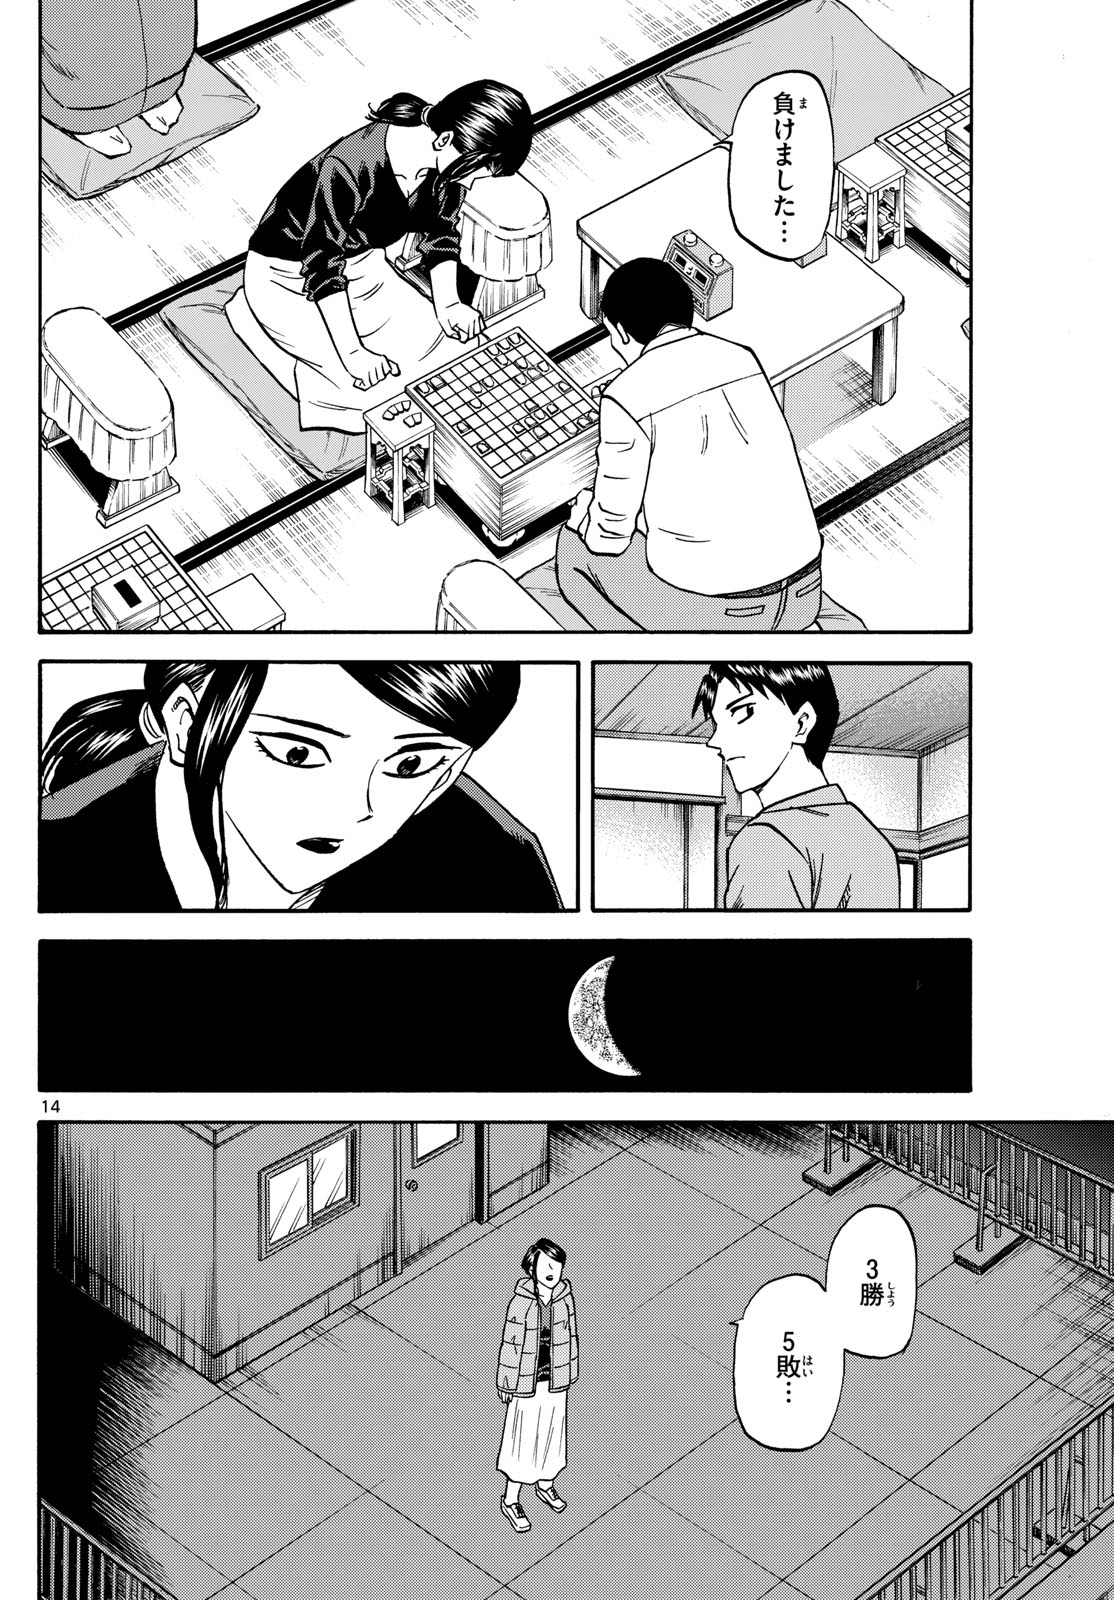 Tatsu to Ichigo - Chapter 172 - Page 14